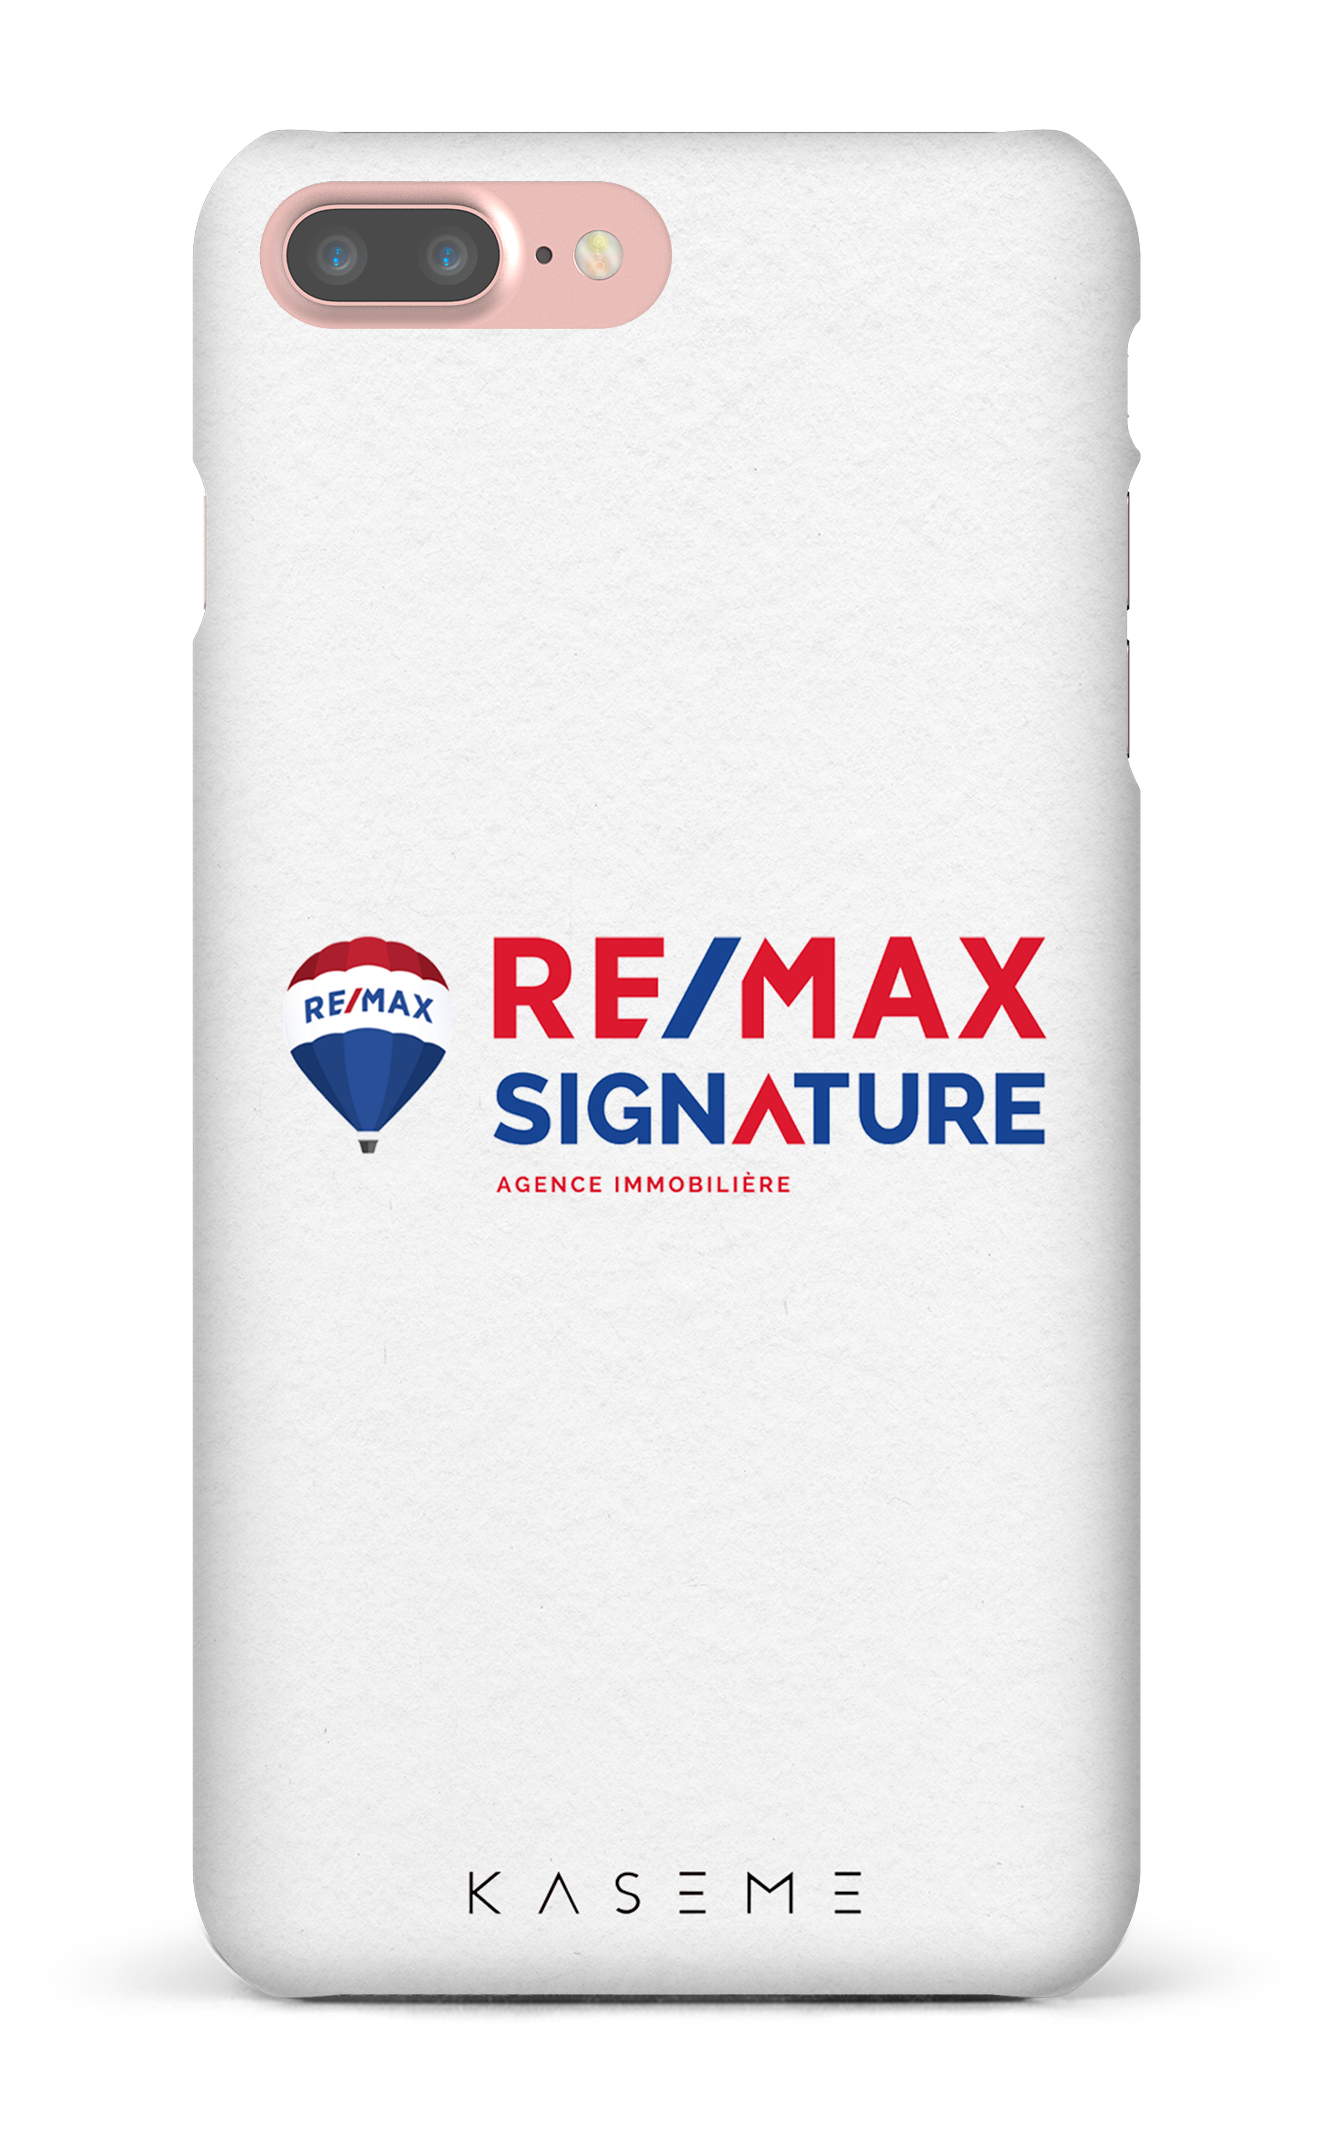 Remax Signature Blanc - iPhone 7 Plus